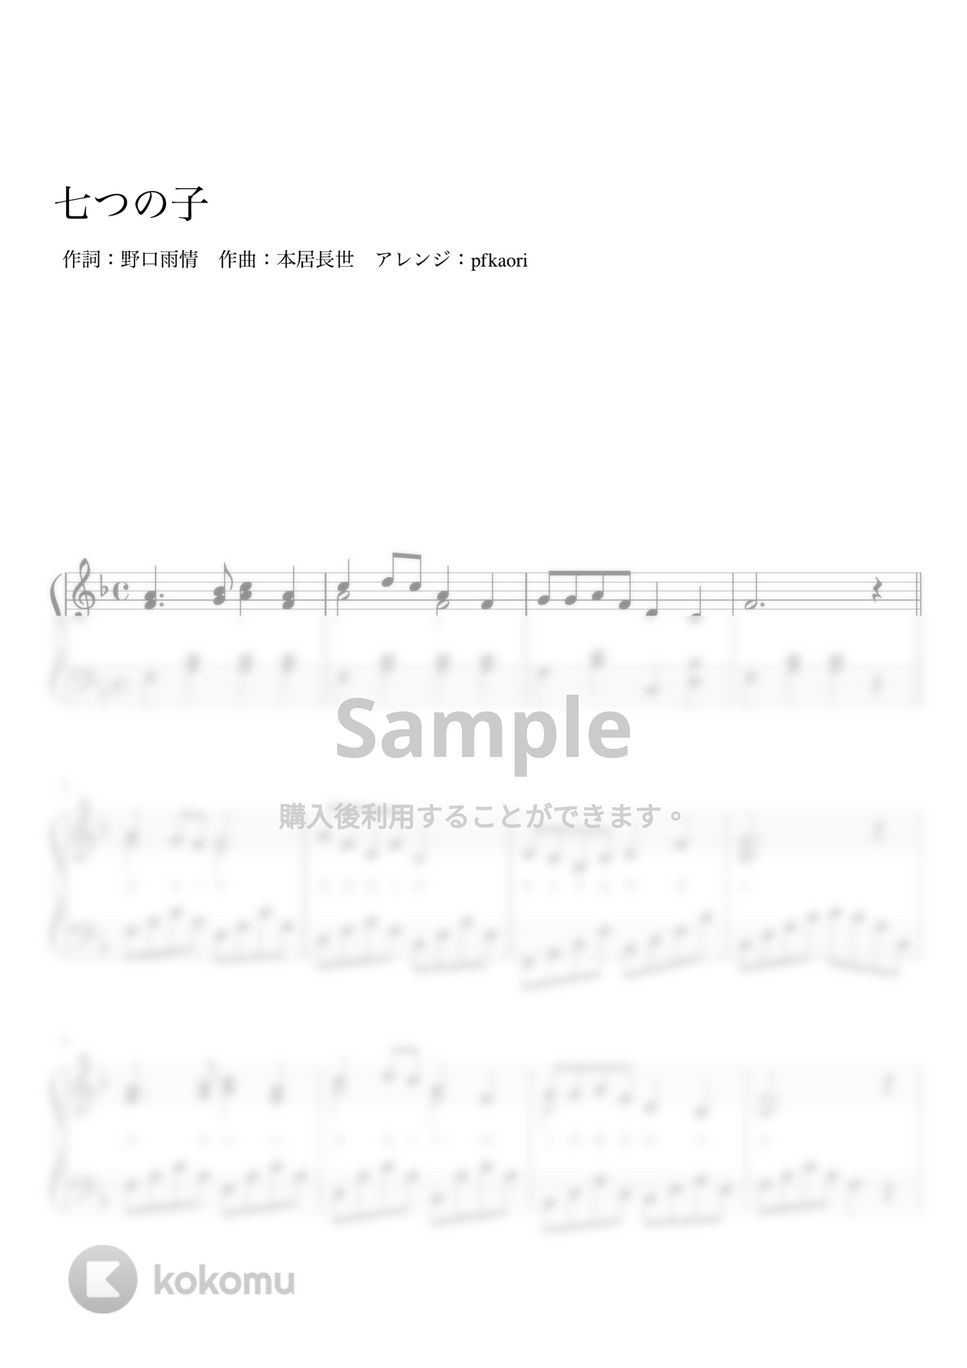 七つの子 (Cdur・ピアノソロ初~中級) by pfkaori